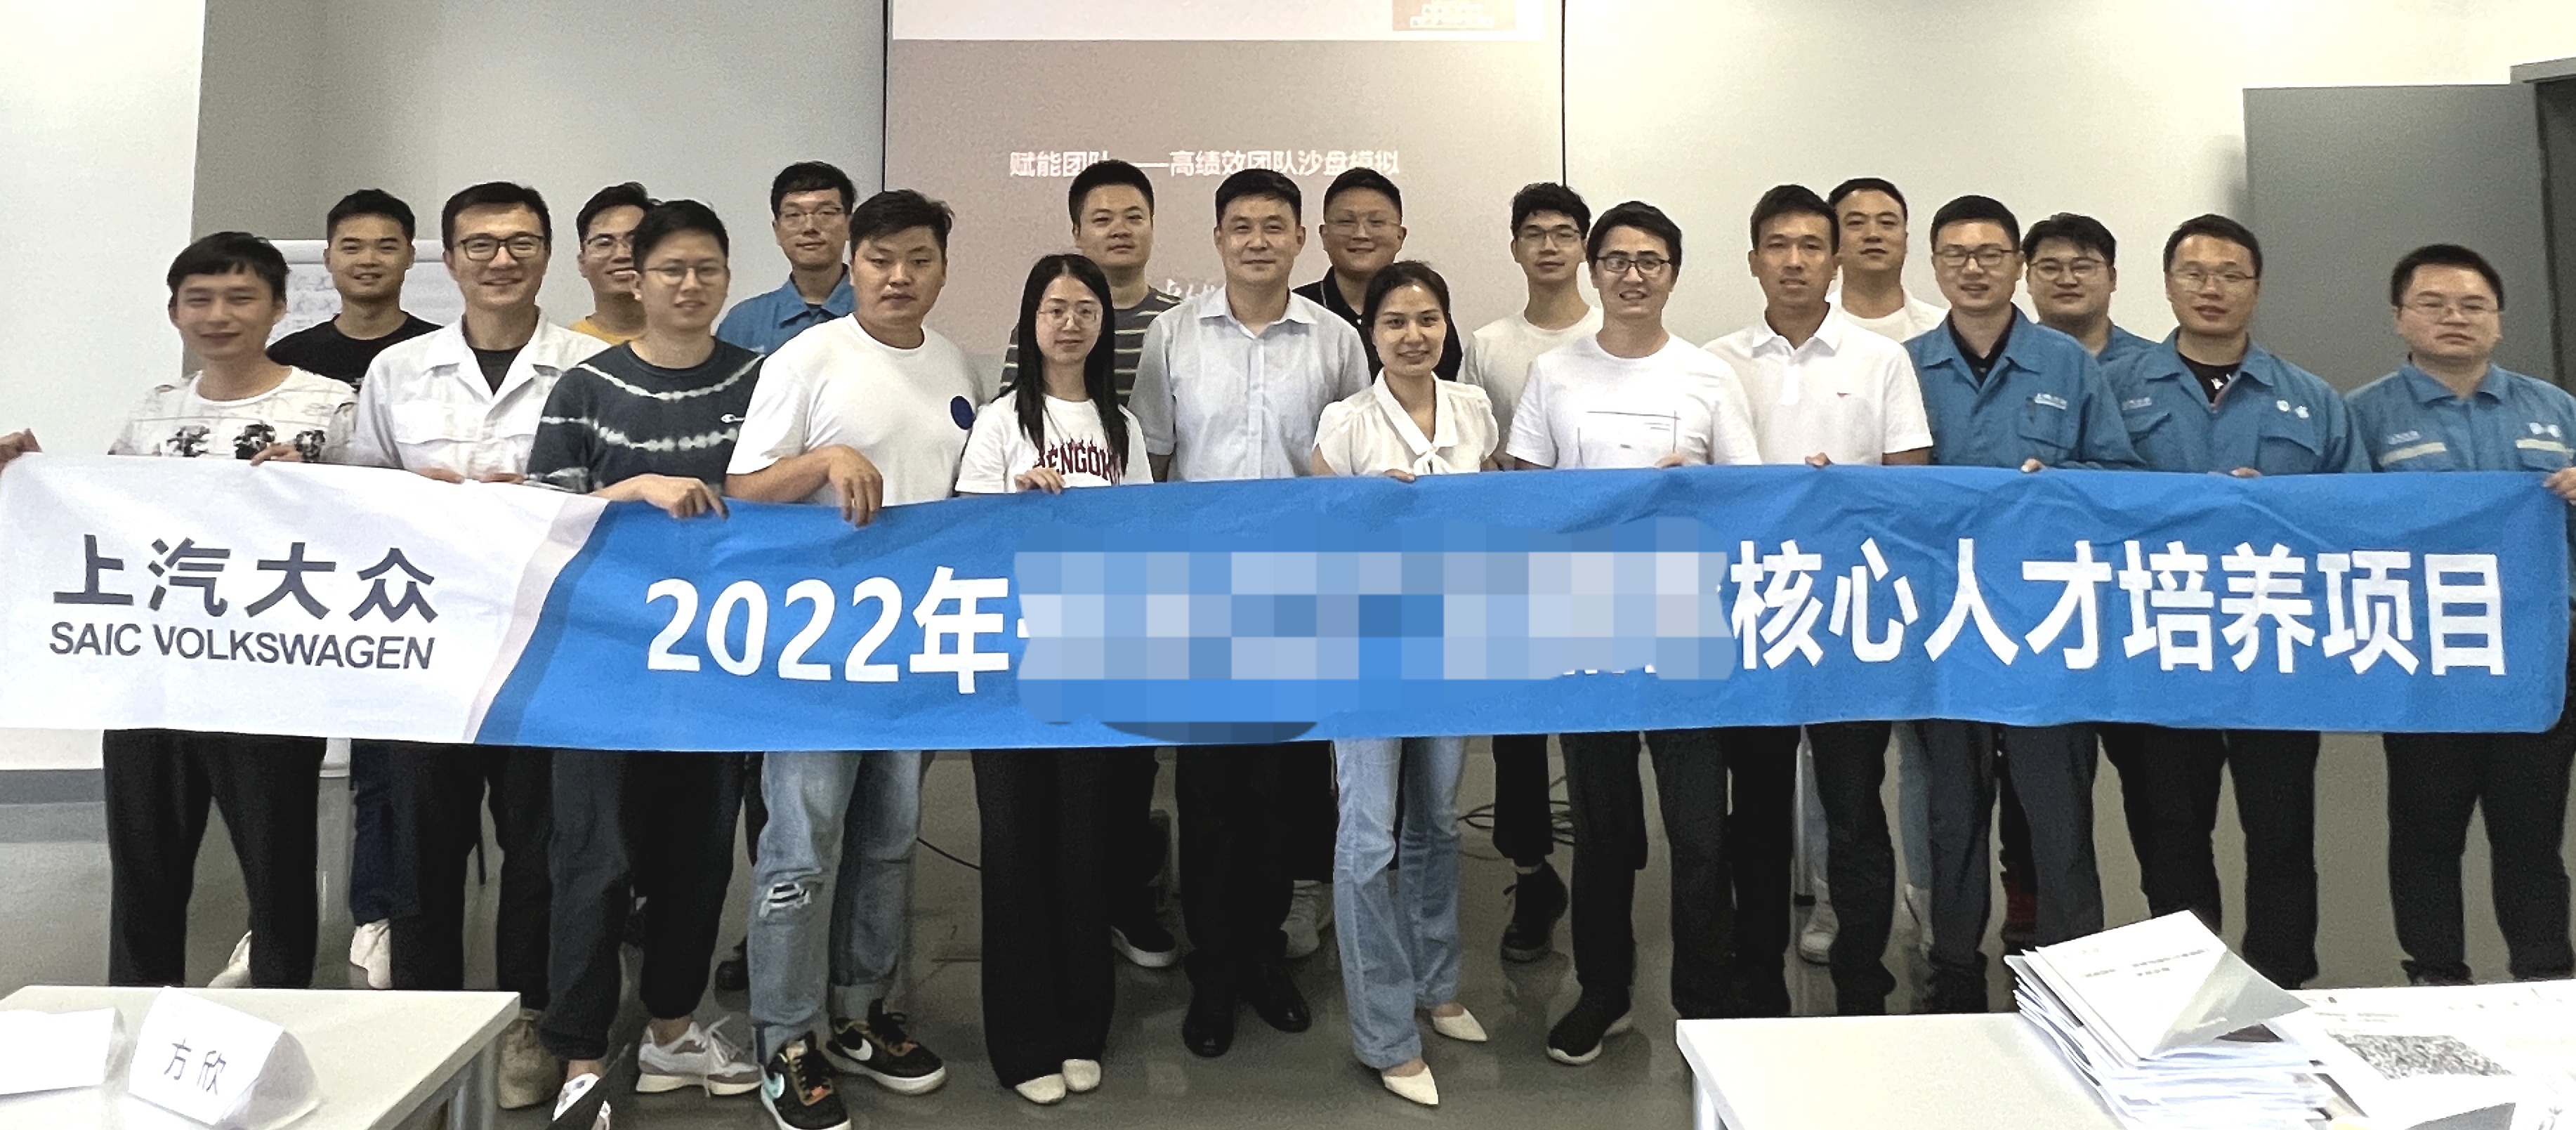 张雷老师2022-07-05 为上汽大众汽车有限公司长沙分公司讲授《赋能团队-高绩效团队沙盘模拟》